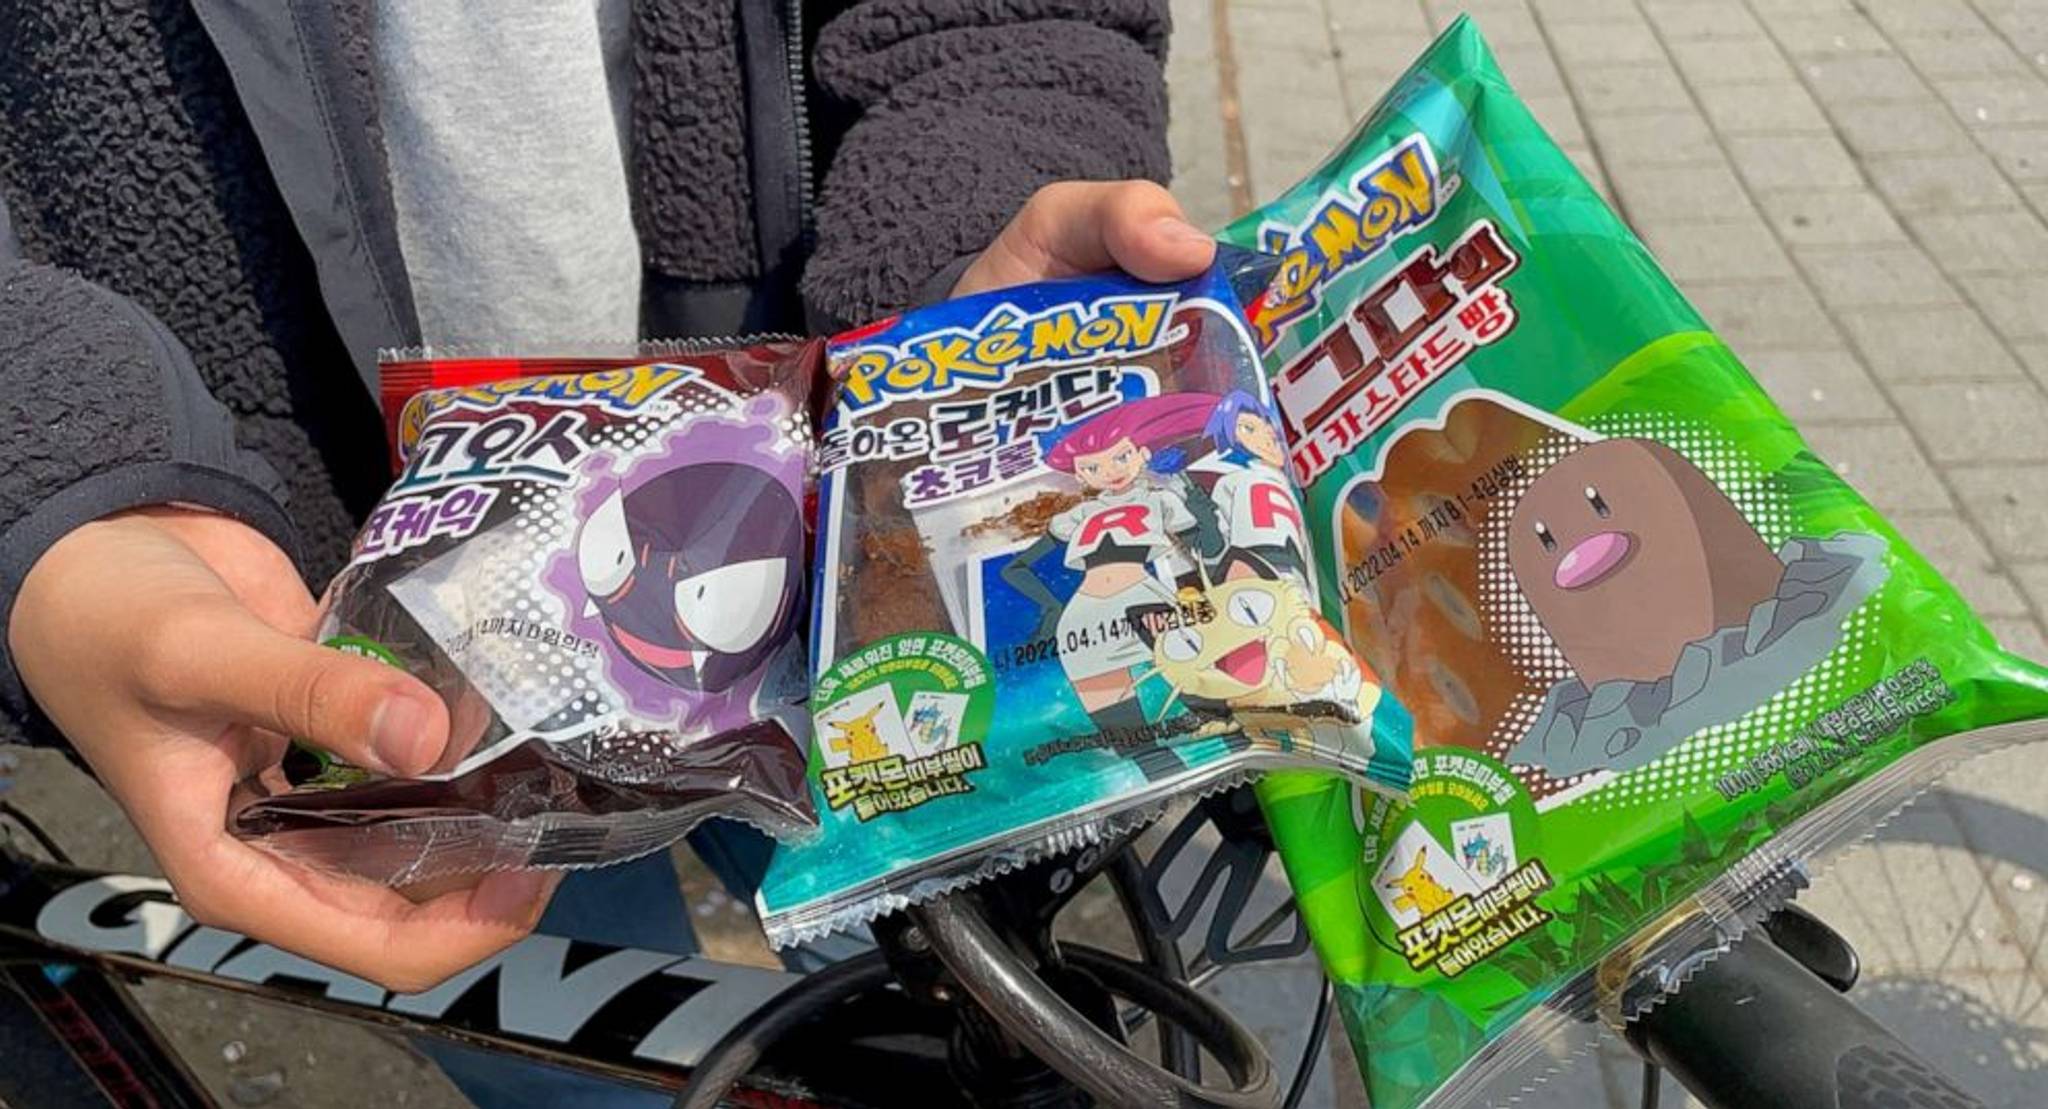 Pokémon bread sparks nostalgia among South Koreans